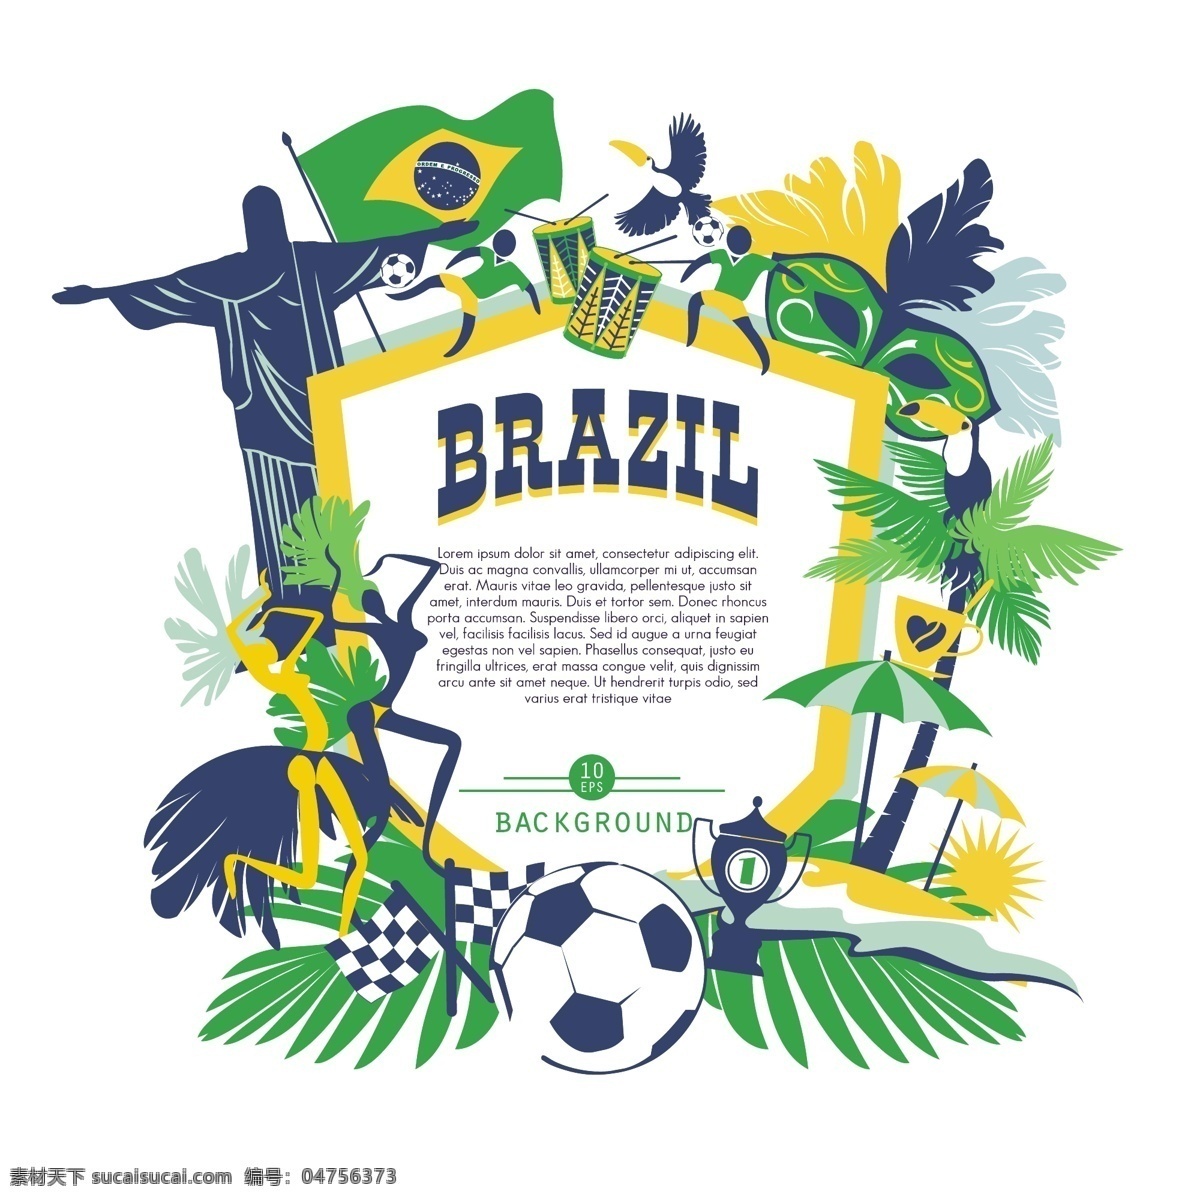 巴西 世界杯 奥运会 世界 杯奥运会 里约奥运会 巴西奥运会 国外广告设计 2016 白色